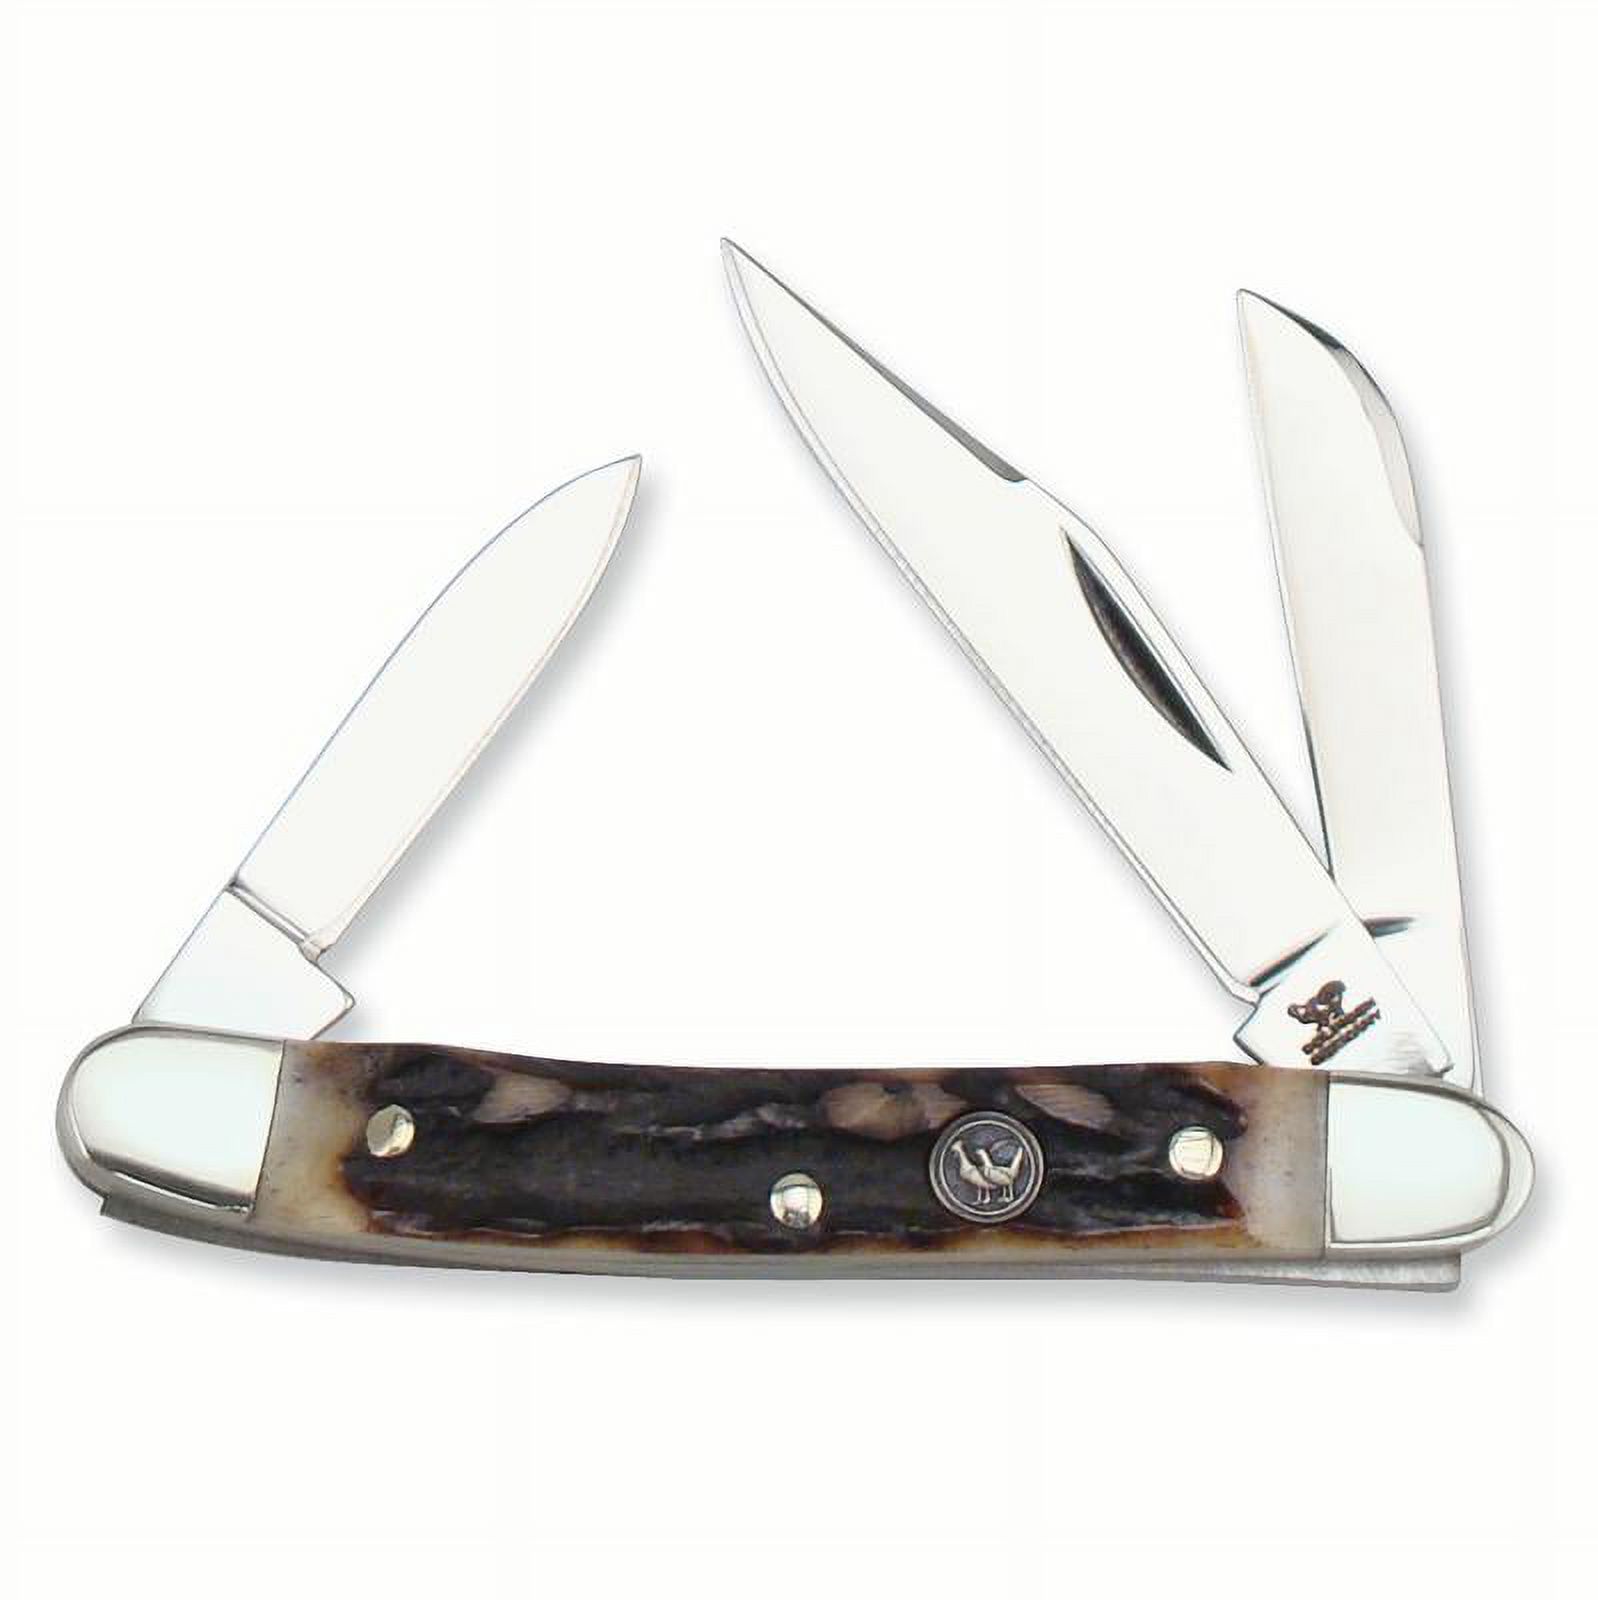 Hen & Rooster Pocket Knife - image 1 of 2